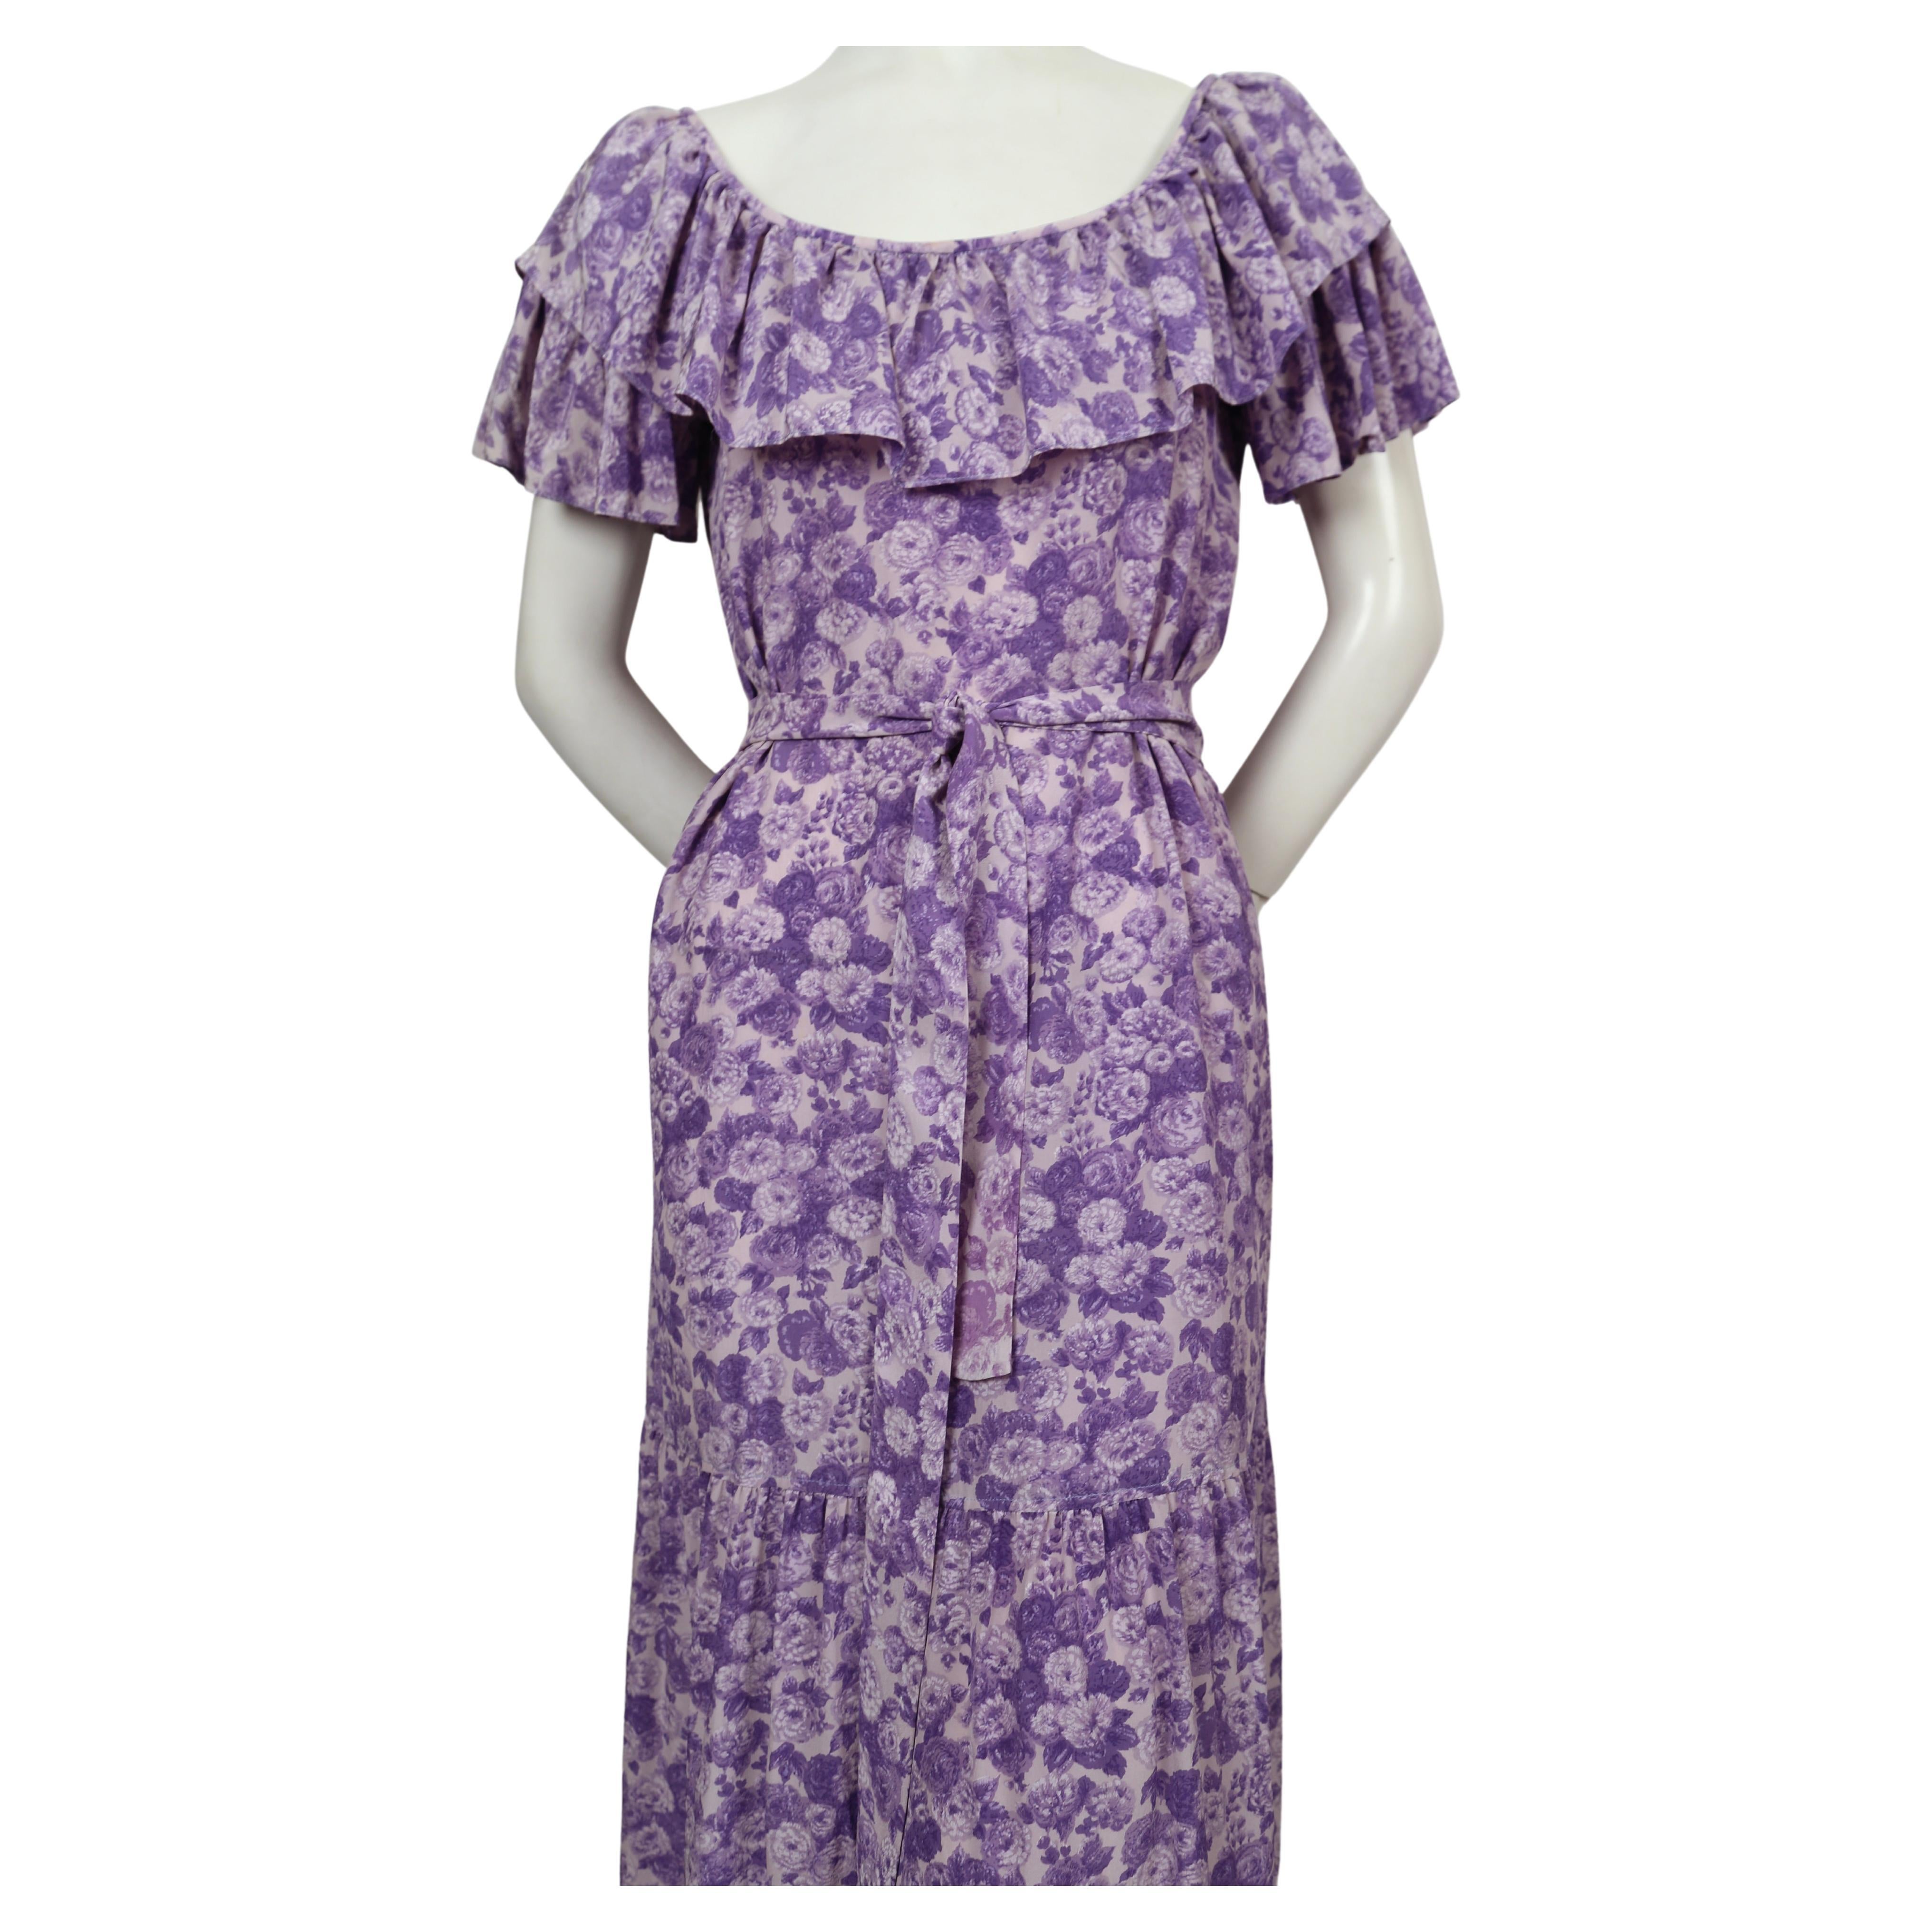 Robe en soie violette, imprimée de fleurs, avec un long lien à la taille, d'Yves Saint Laurent, datant des années 1970. Labellisé en taille 42, il est cependant très petit, surtout s'il est porté sur les épaules. Mesures approximatives : jusqu'à 35